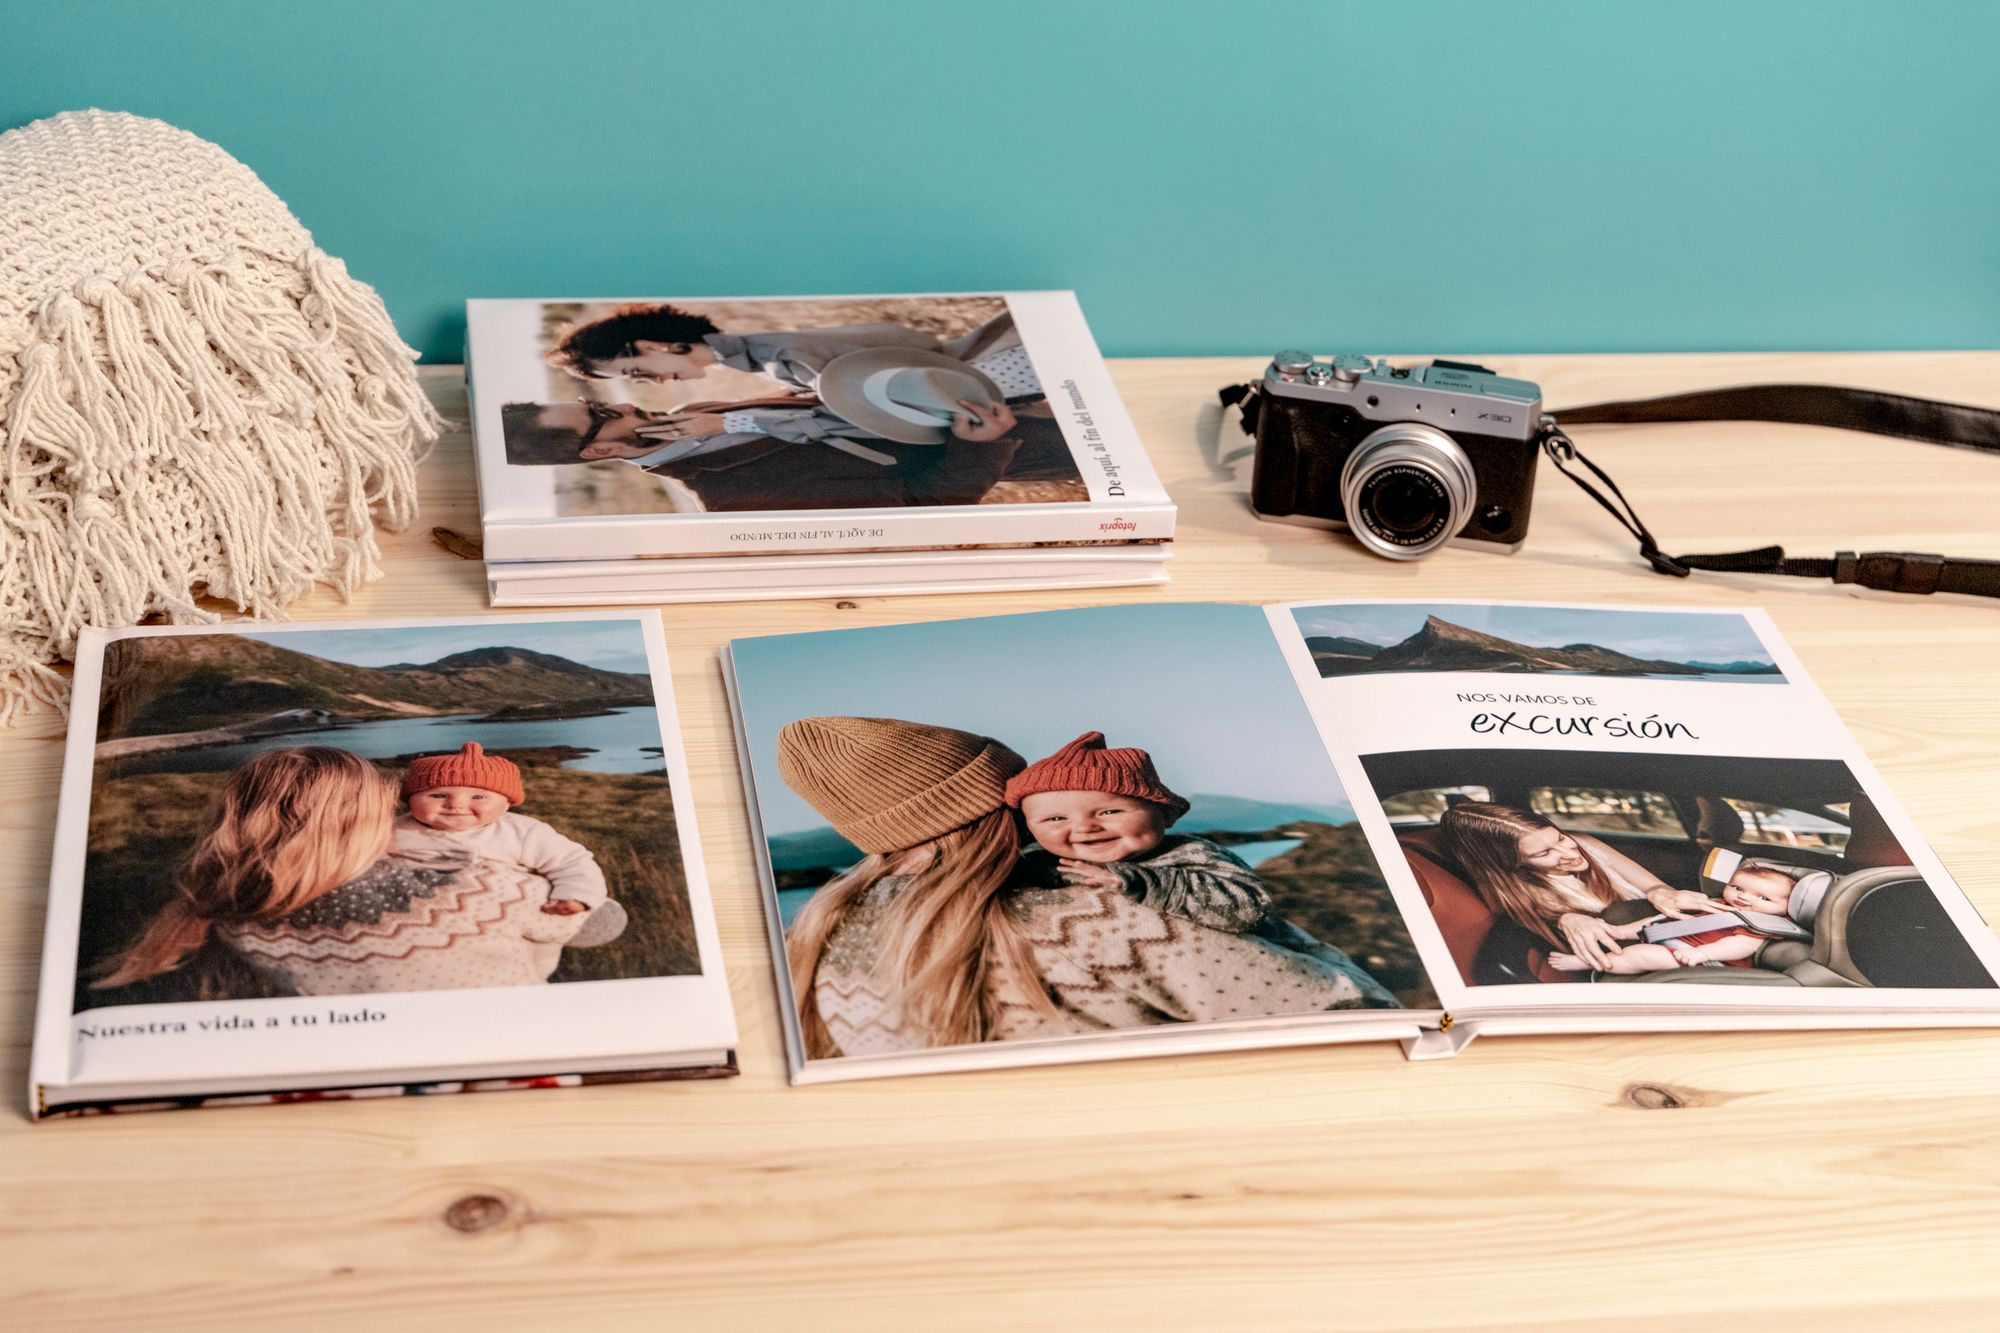 Regalos personalizados con fotografías - regala recuerdos